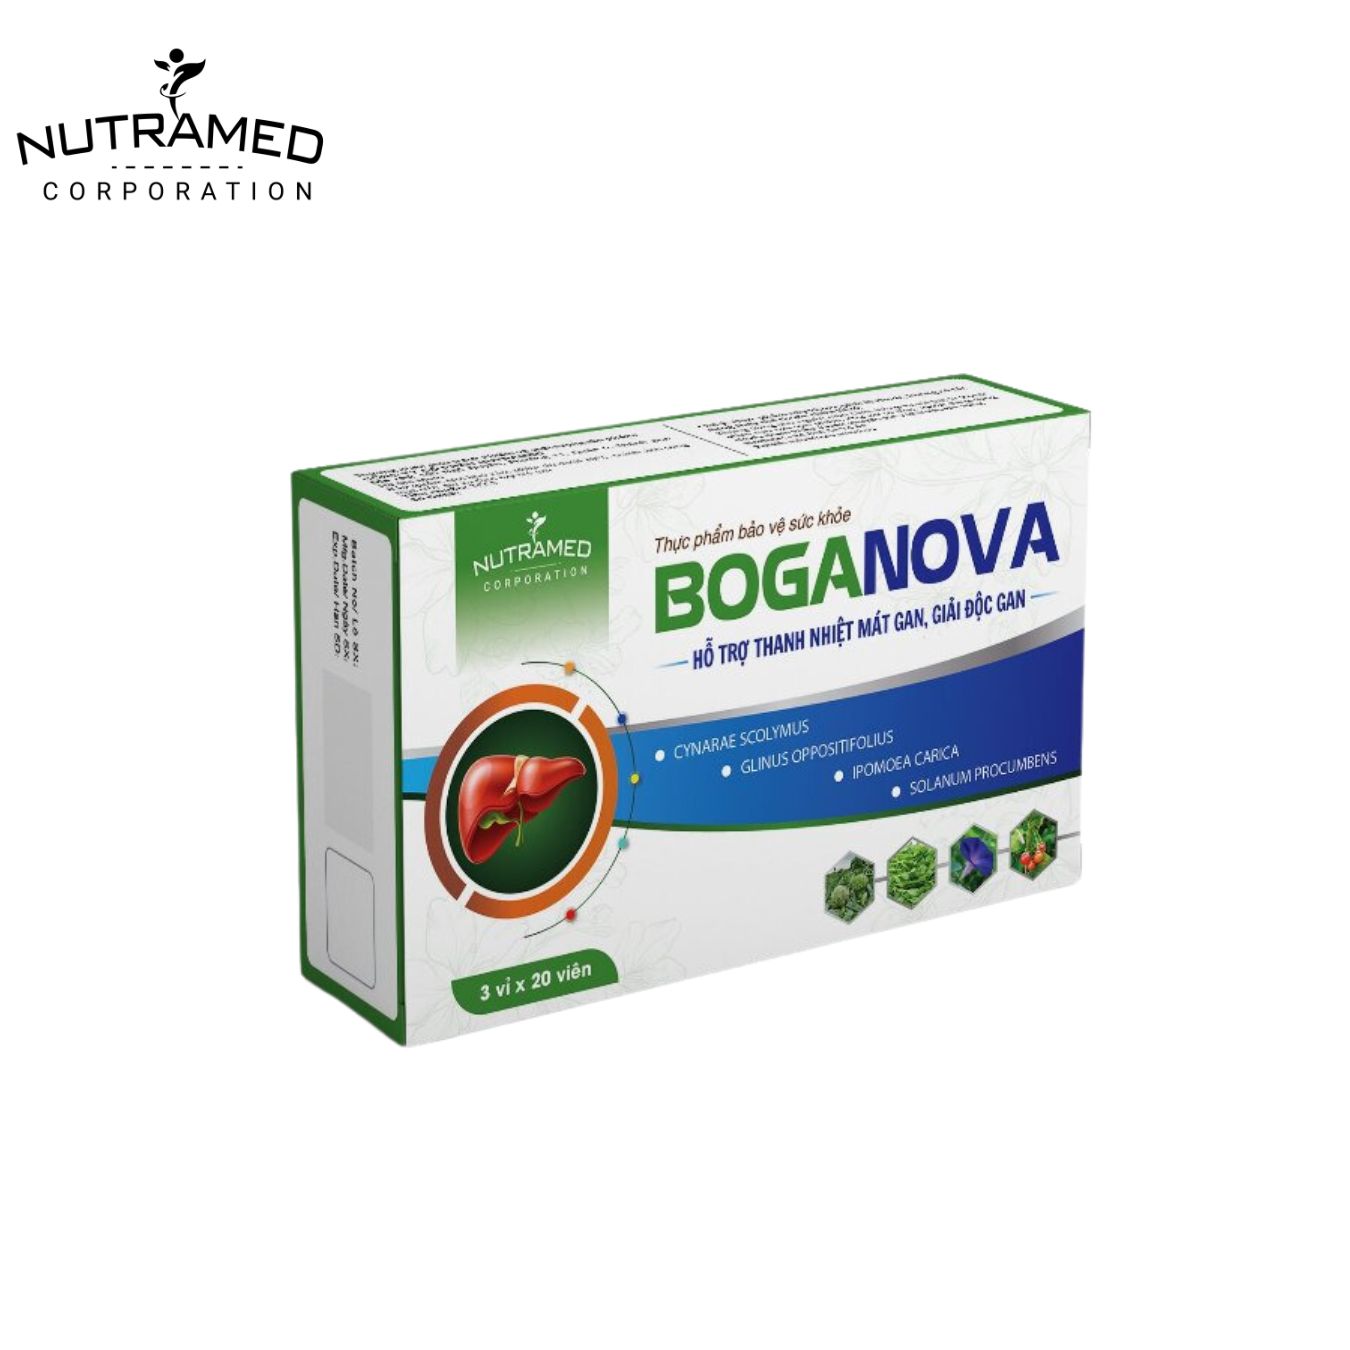 Viên uống hỗ trợ bảo vệ suy giảm chức năng gan BOGANOVA - 1 hộp x 3 vỉ x 20 viên